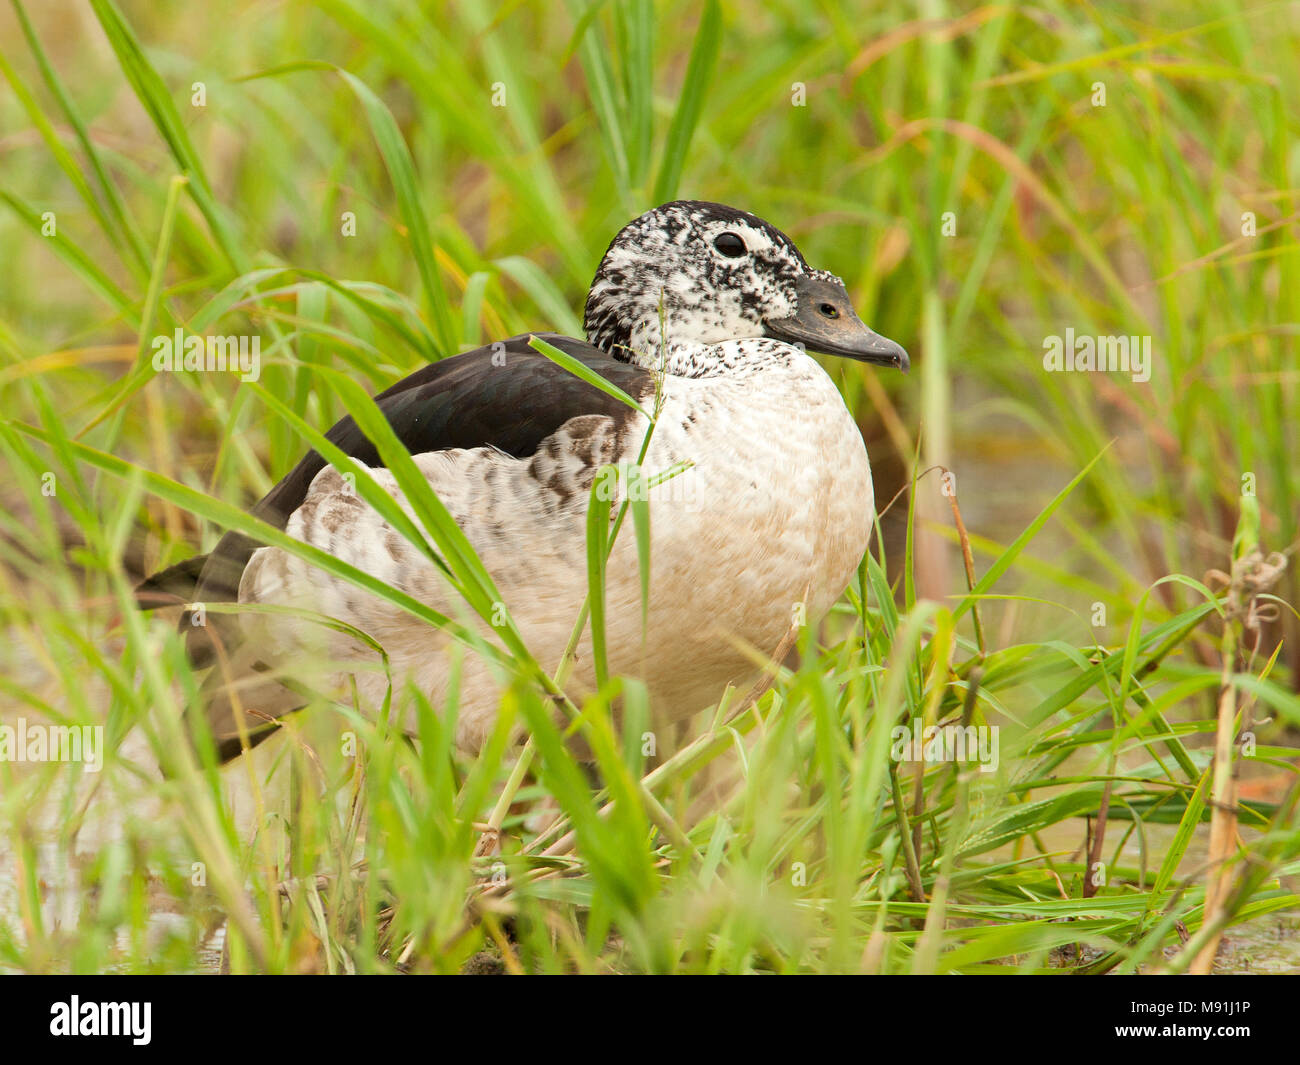 Vrouwtje Knobbeleend in vegetatie, Female Comb Duck in vegetation Stock Photo